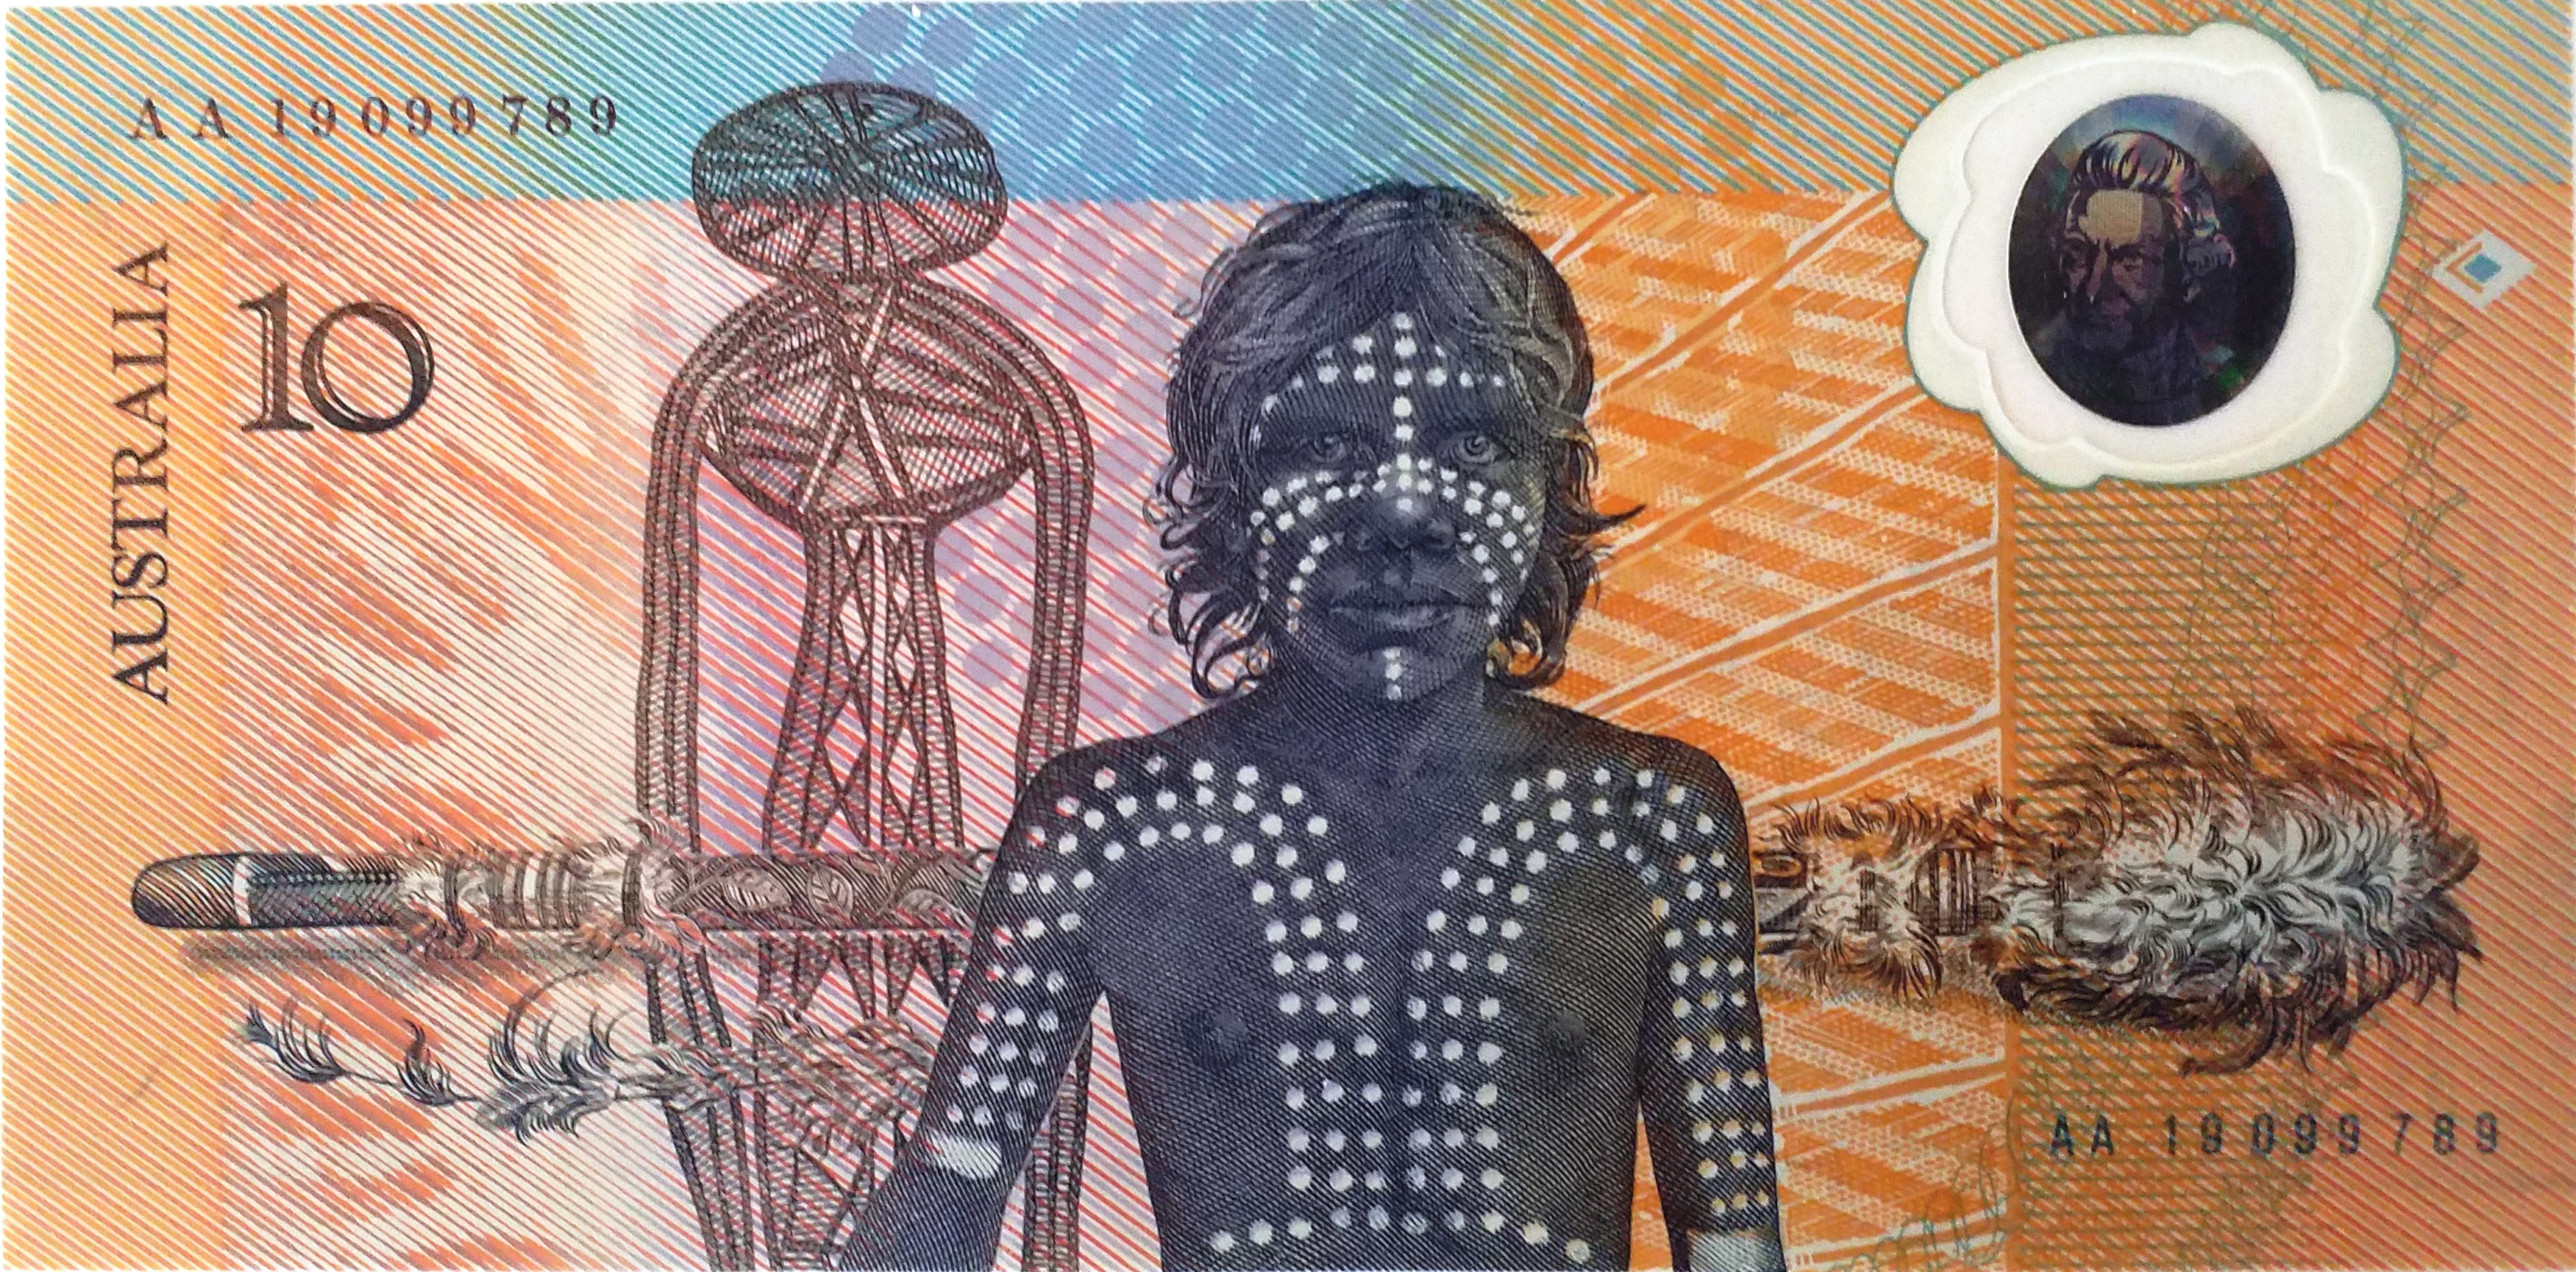 Le premier billet polymère au monde: le 10 dollars australien commémoratif de 1988